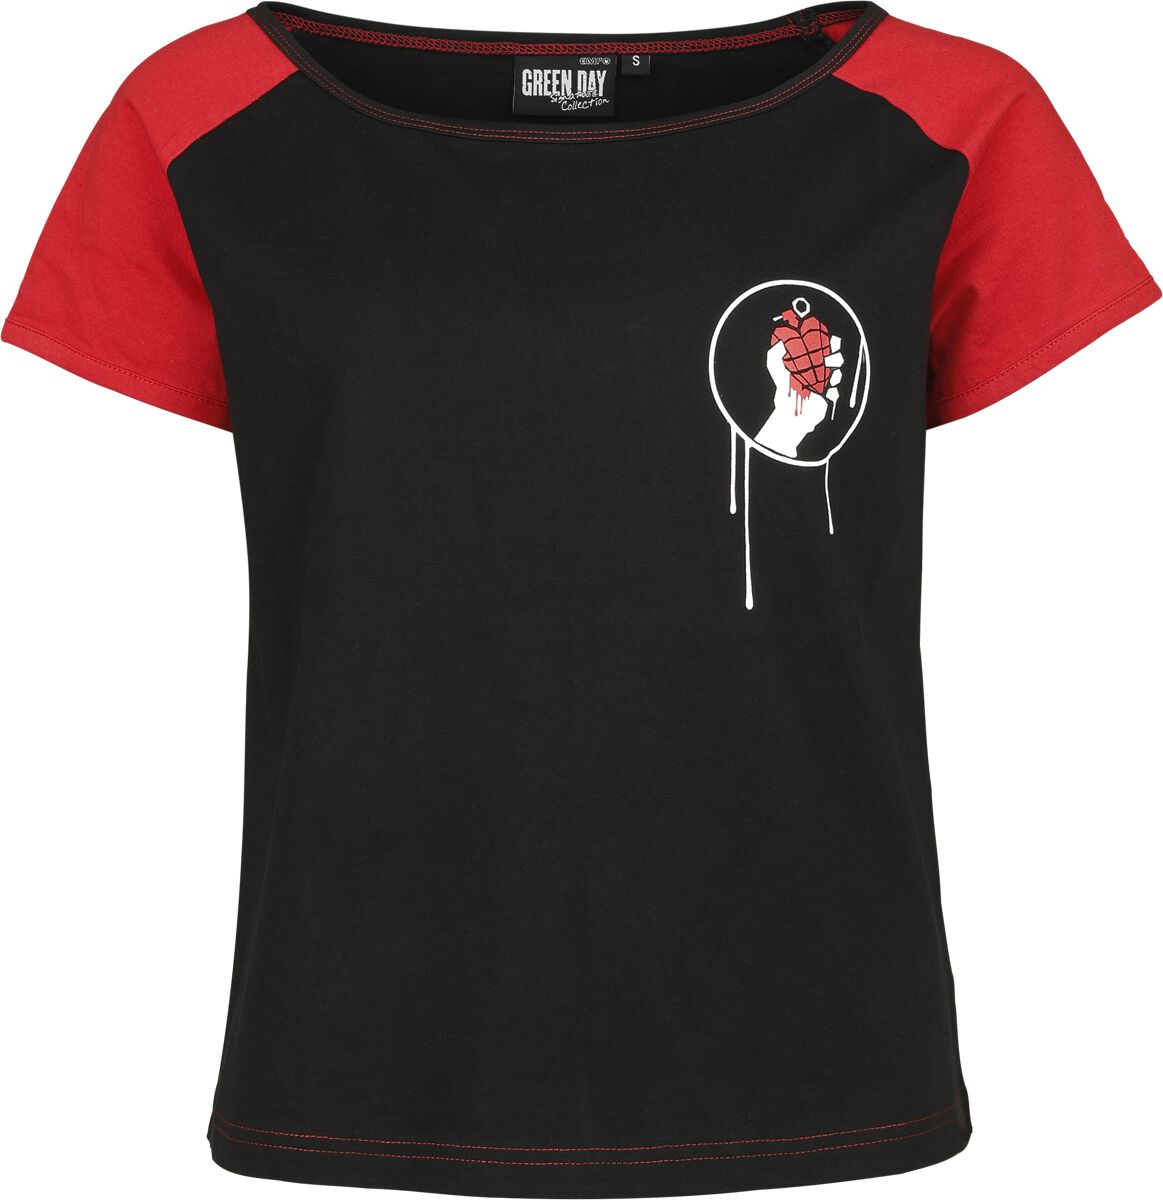 Green Day T-Shirt - EMP Signature Collection - XS bis XXL - für Damen - Größe M - schwarz/rot  - EMP exklusives Merchandise!